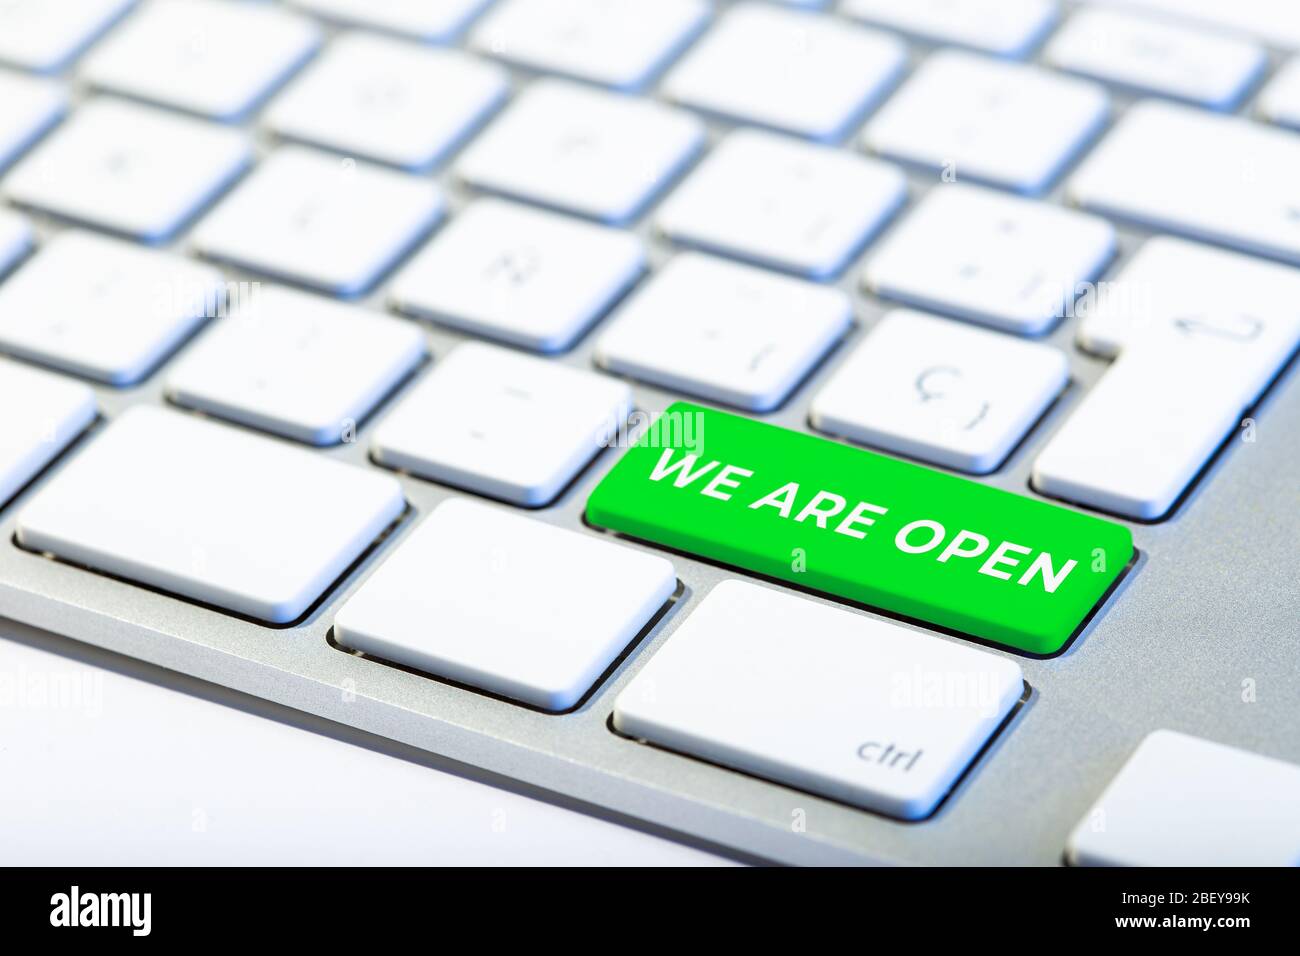 Wir sind ein offenes Konzept. Tastatur mit grüner Taste und Text Stockfoto